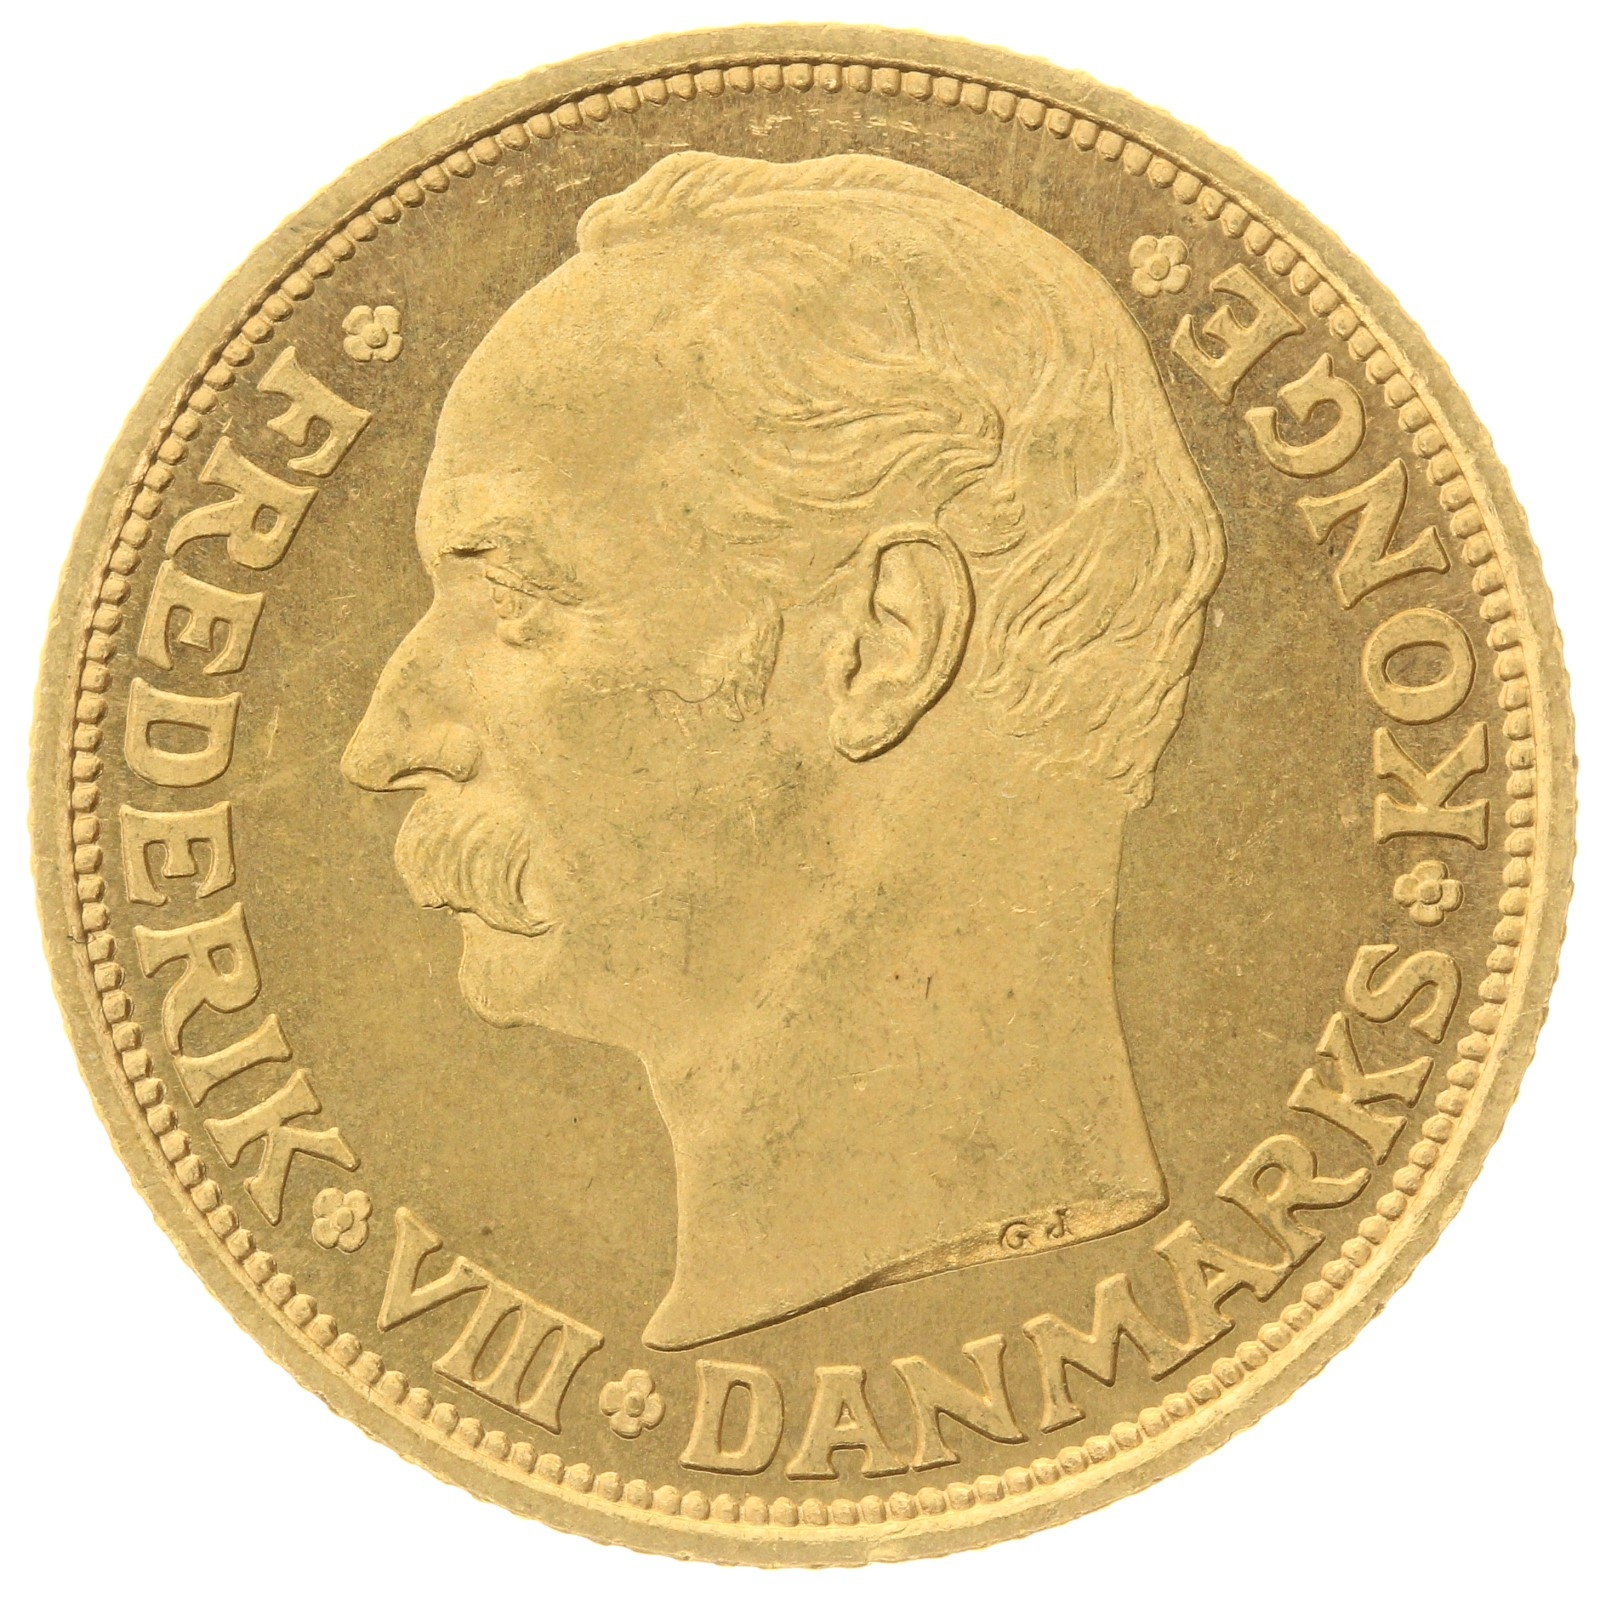 Denmark - 20 kroner - 1911 - Frederik VIII 